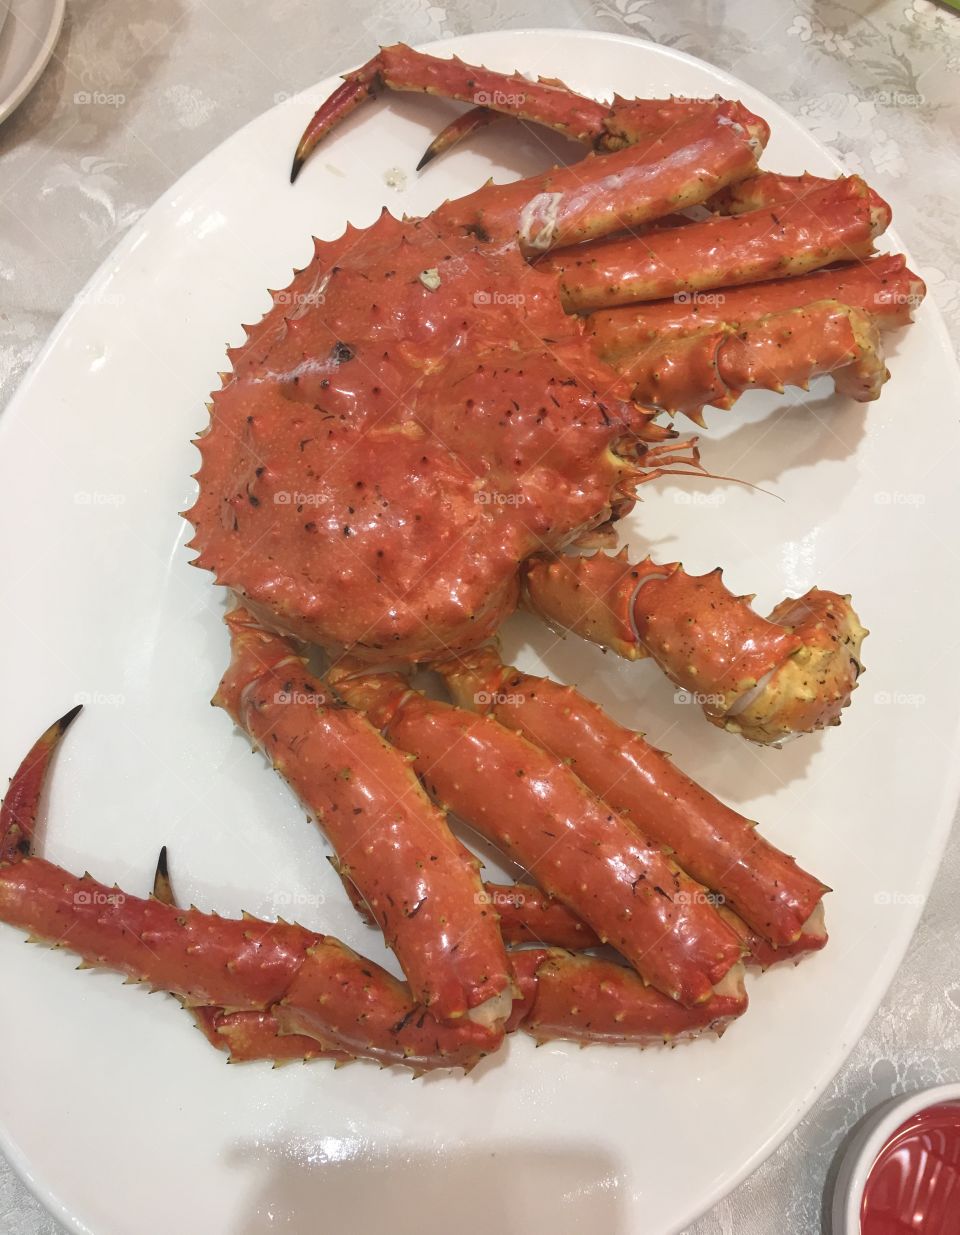 Alaska crab